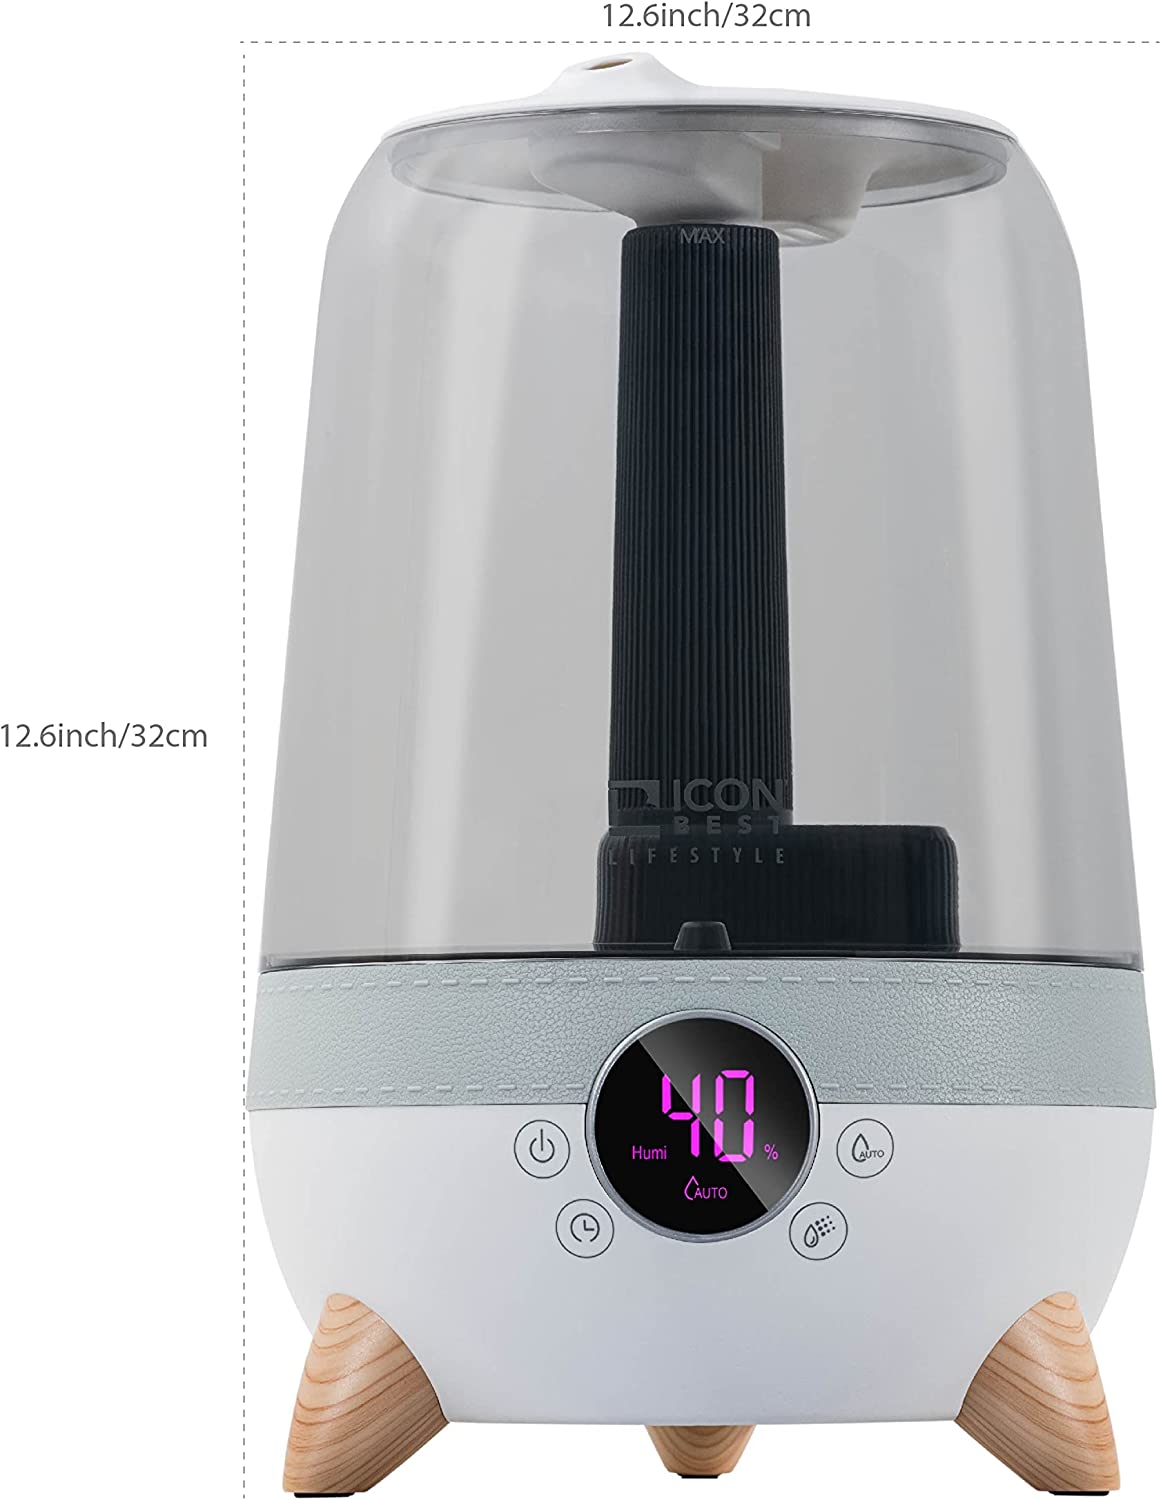 3.5 L Ultrasonic Cool Mist Air Humidifier& Diffuser